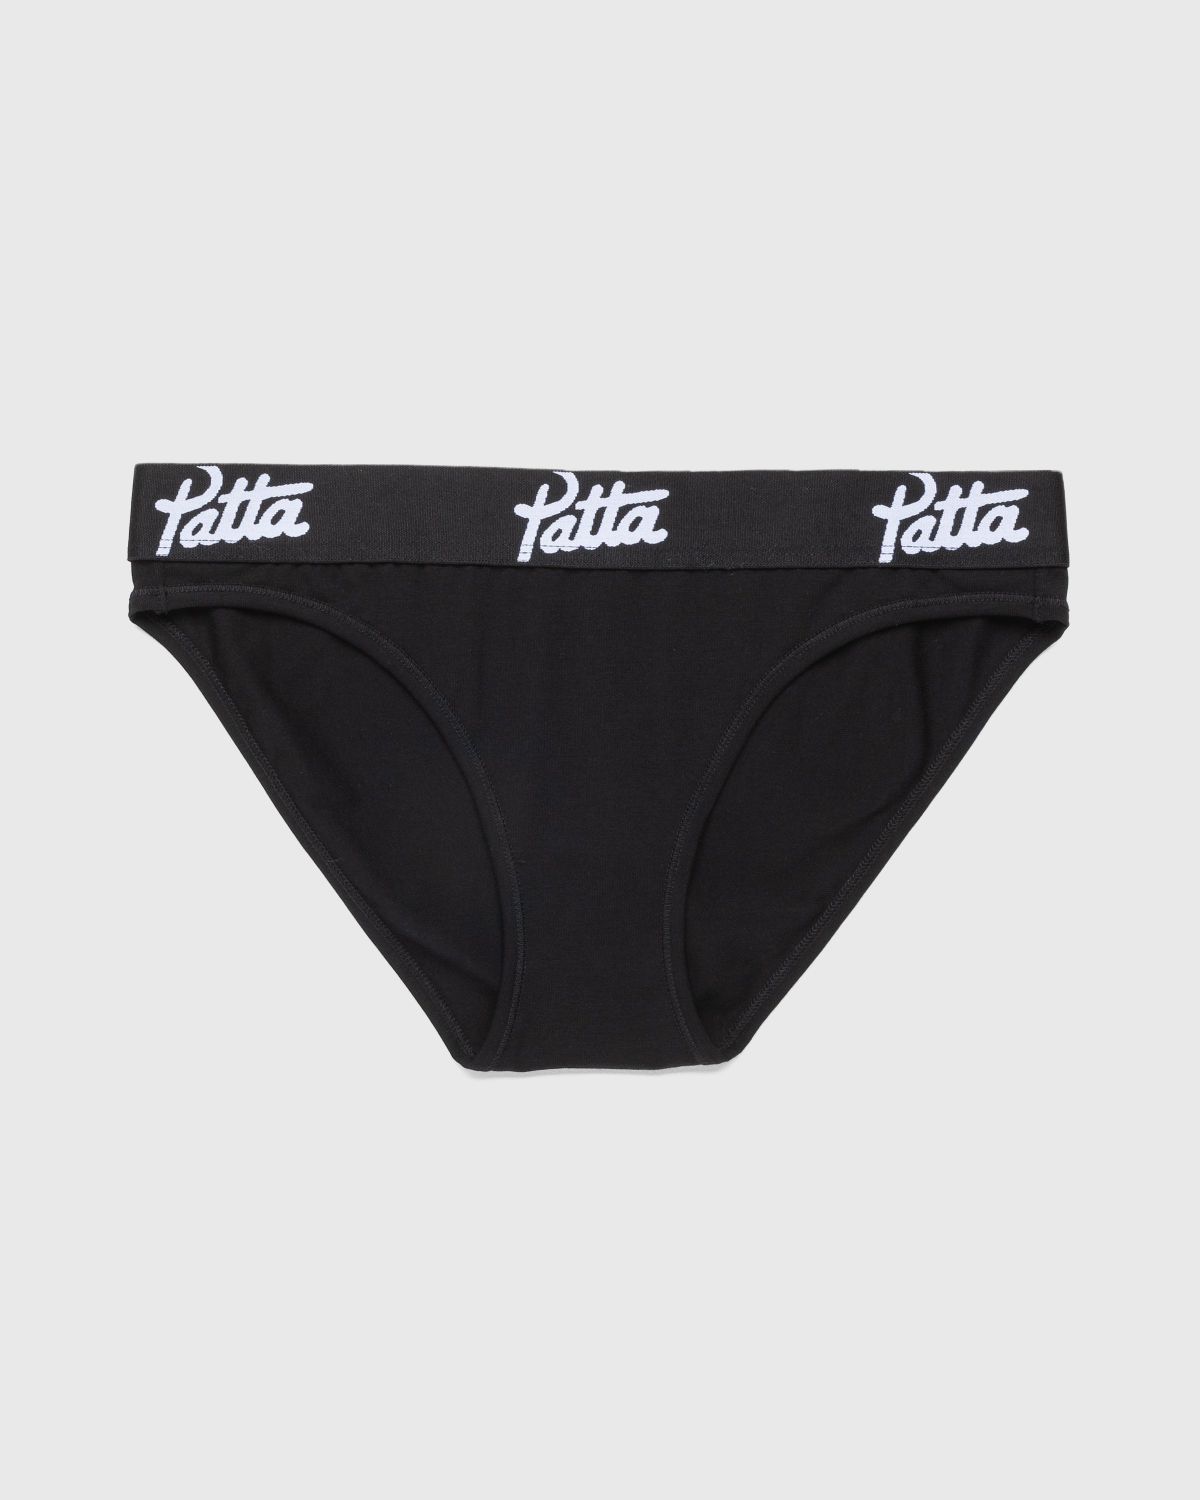 Patta – Women’s Underwear Brief Black - Underwear & Loungewear - Black - Image 1